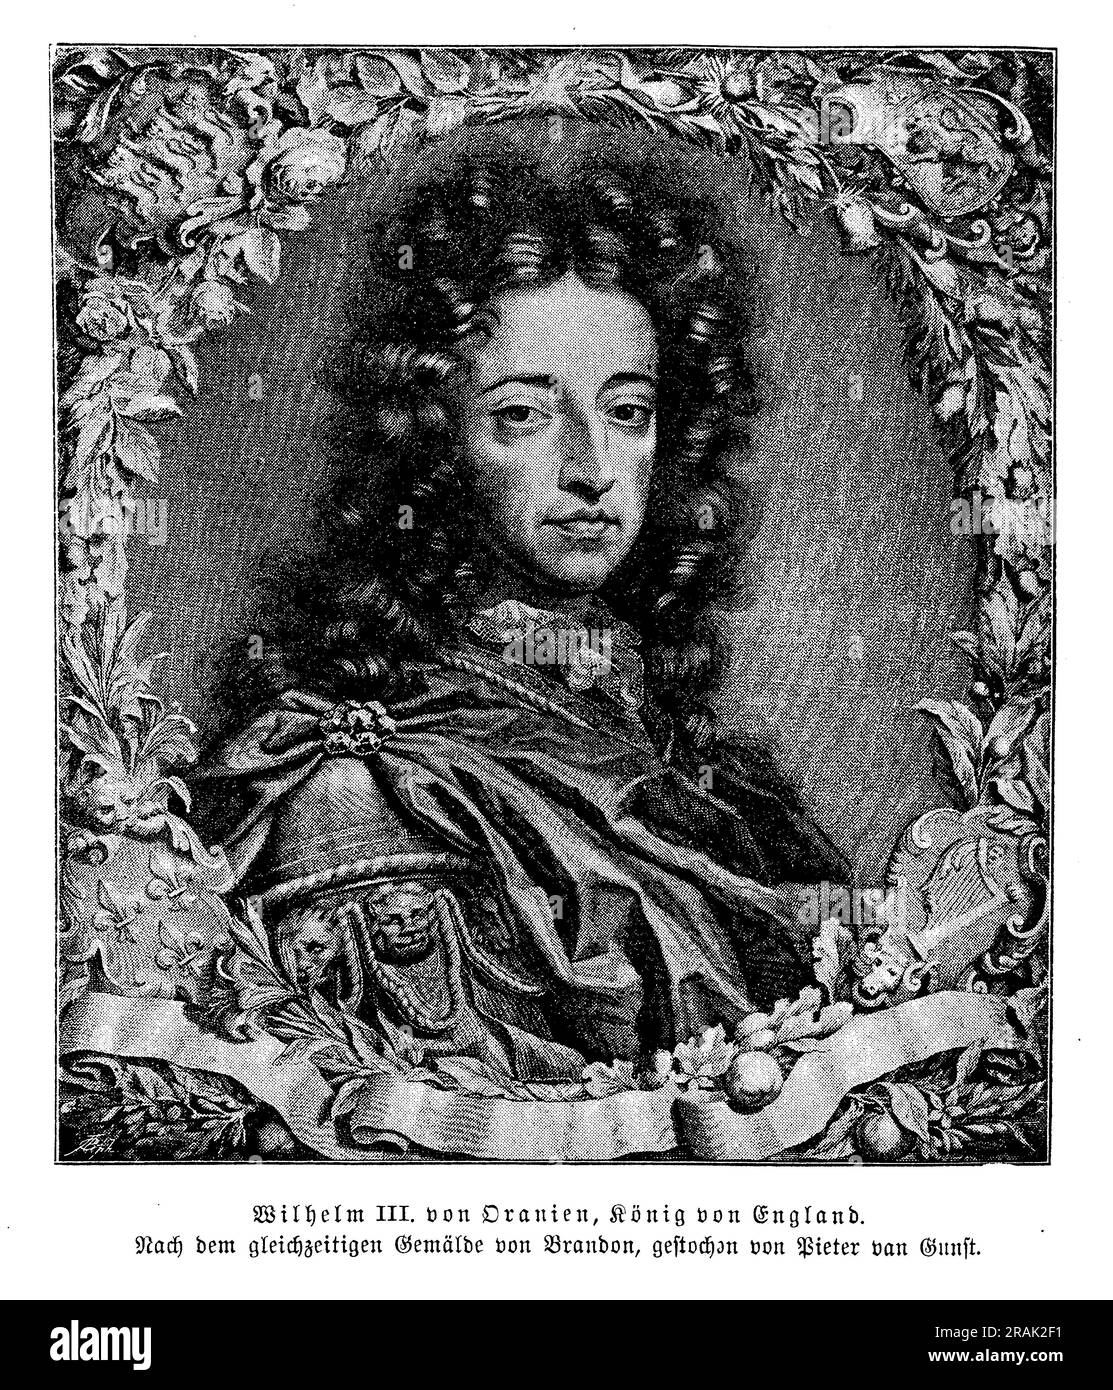 William III. Von Orange, auch bekannt als William von Orange-Nassau, war ein niederländischer Prinz, der von 1689 bis zu seinem Tod im Jahr 1702 als König von England, Schottland und Irland regierte. Er wurde König im Rahmen der glorreichen Revolution, die den Sturz seines Schwiegervaters, James II., und die Gründung einer konstitutionellen Monarchie in England erlebte. William wird für seine militärischen Fähigkeiten, sein Engagement für den Protestantismus und seine Bemühungen, Europa gegen die expansionistischen Ambitionen von Ludwig XIV. Von Frankreich zu vereinen, in Erinnerung gerufen. Stockfoto